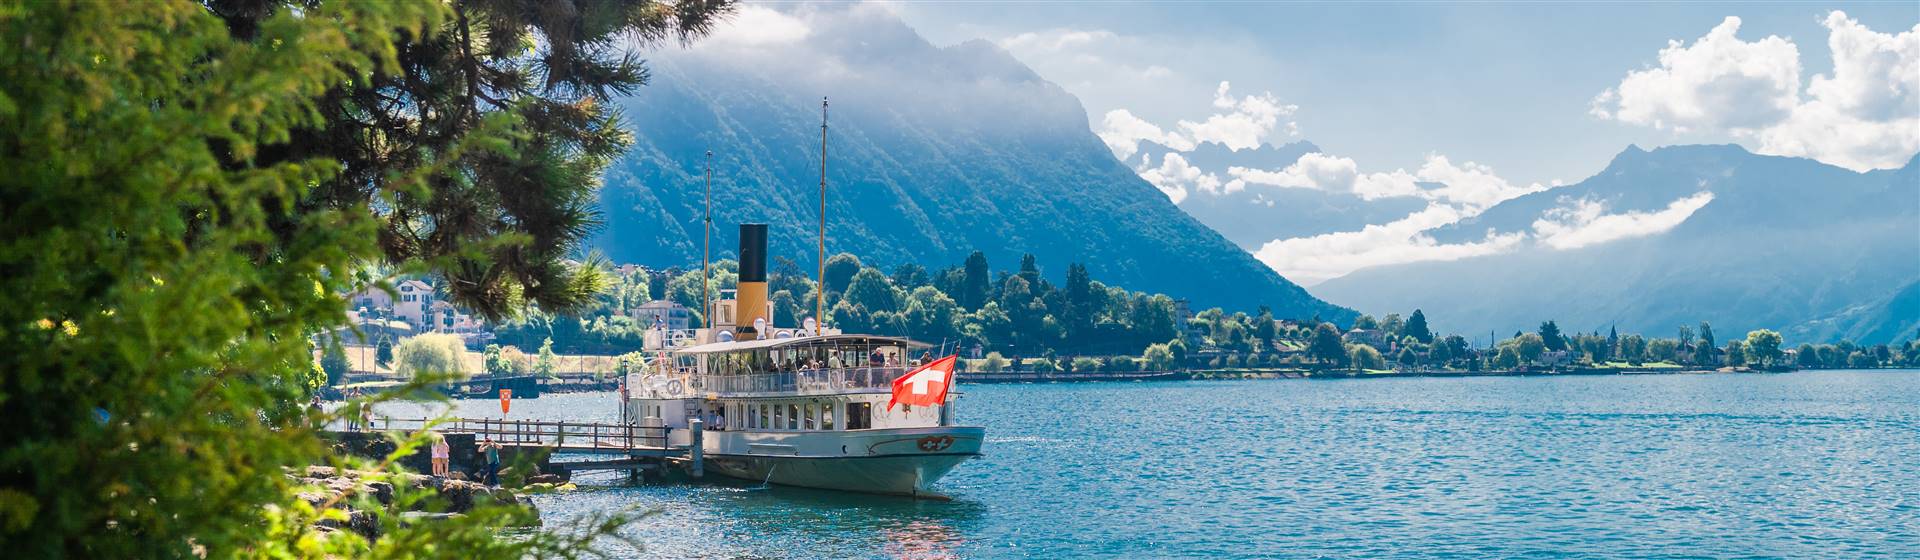 <img src="lakegenevaboatcruise©shutterstock.jpeg" alt="Lake Geneva Boat Cruise"/>